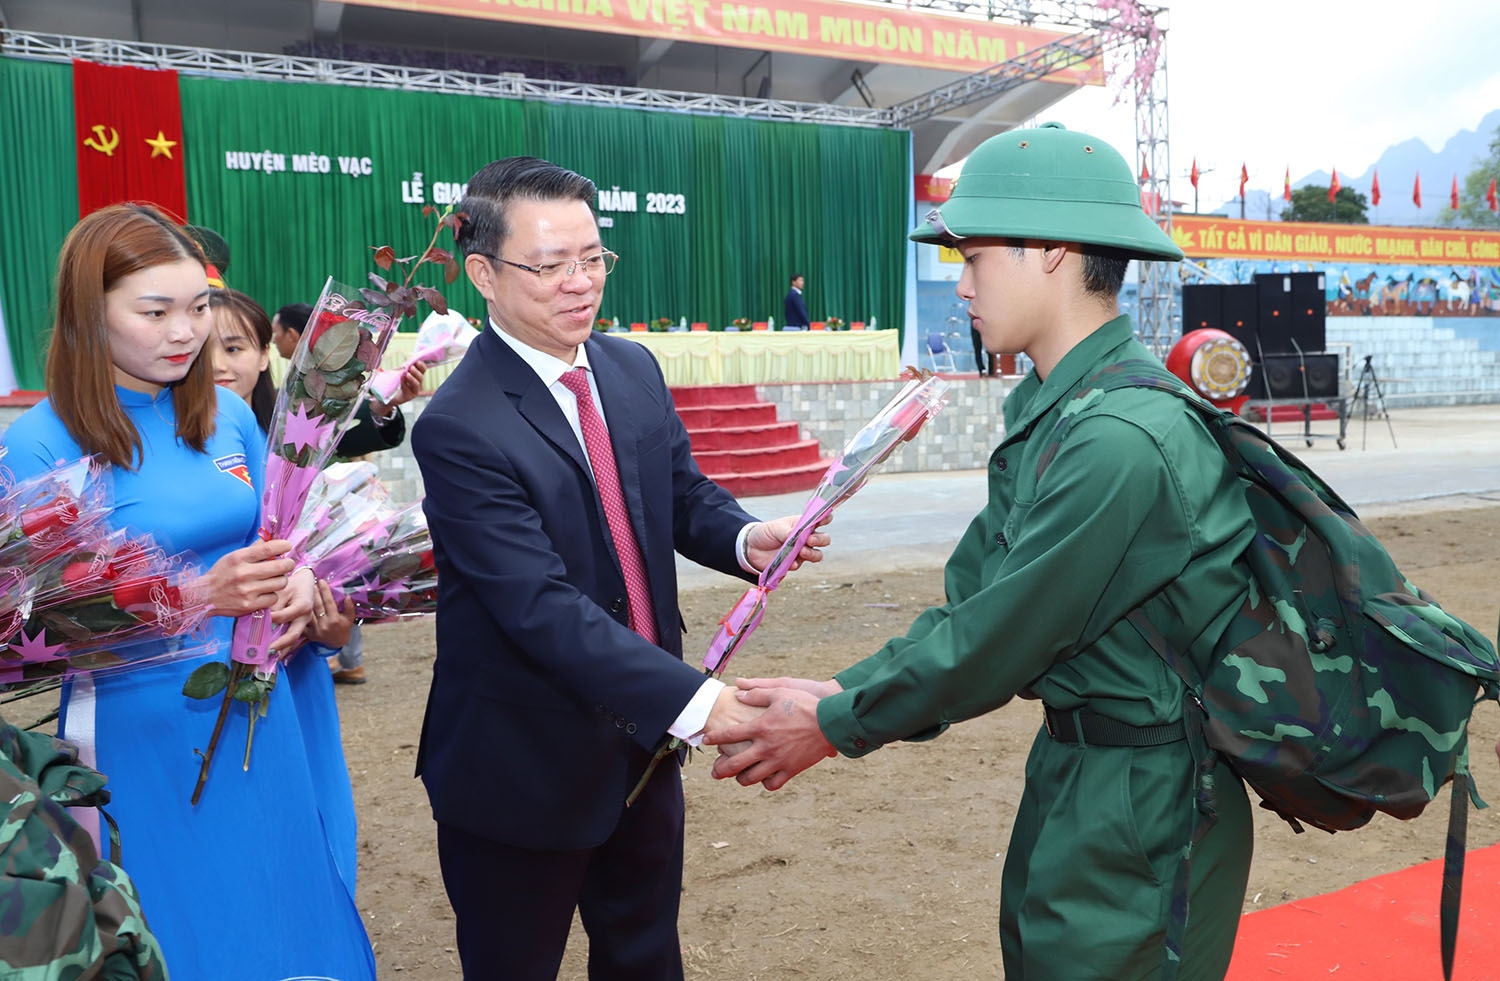 Ông Trần Mạnh Lợi - Ủy viên Ban Thường vụ Tỉnh ủy, Trưởng Ban Dân vận Tỉnh ủy Hà Giang tặng hoa, động viên tân binh lên đường nhập ngũ